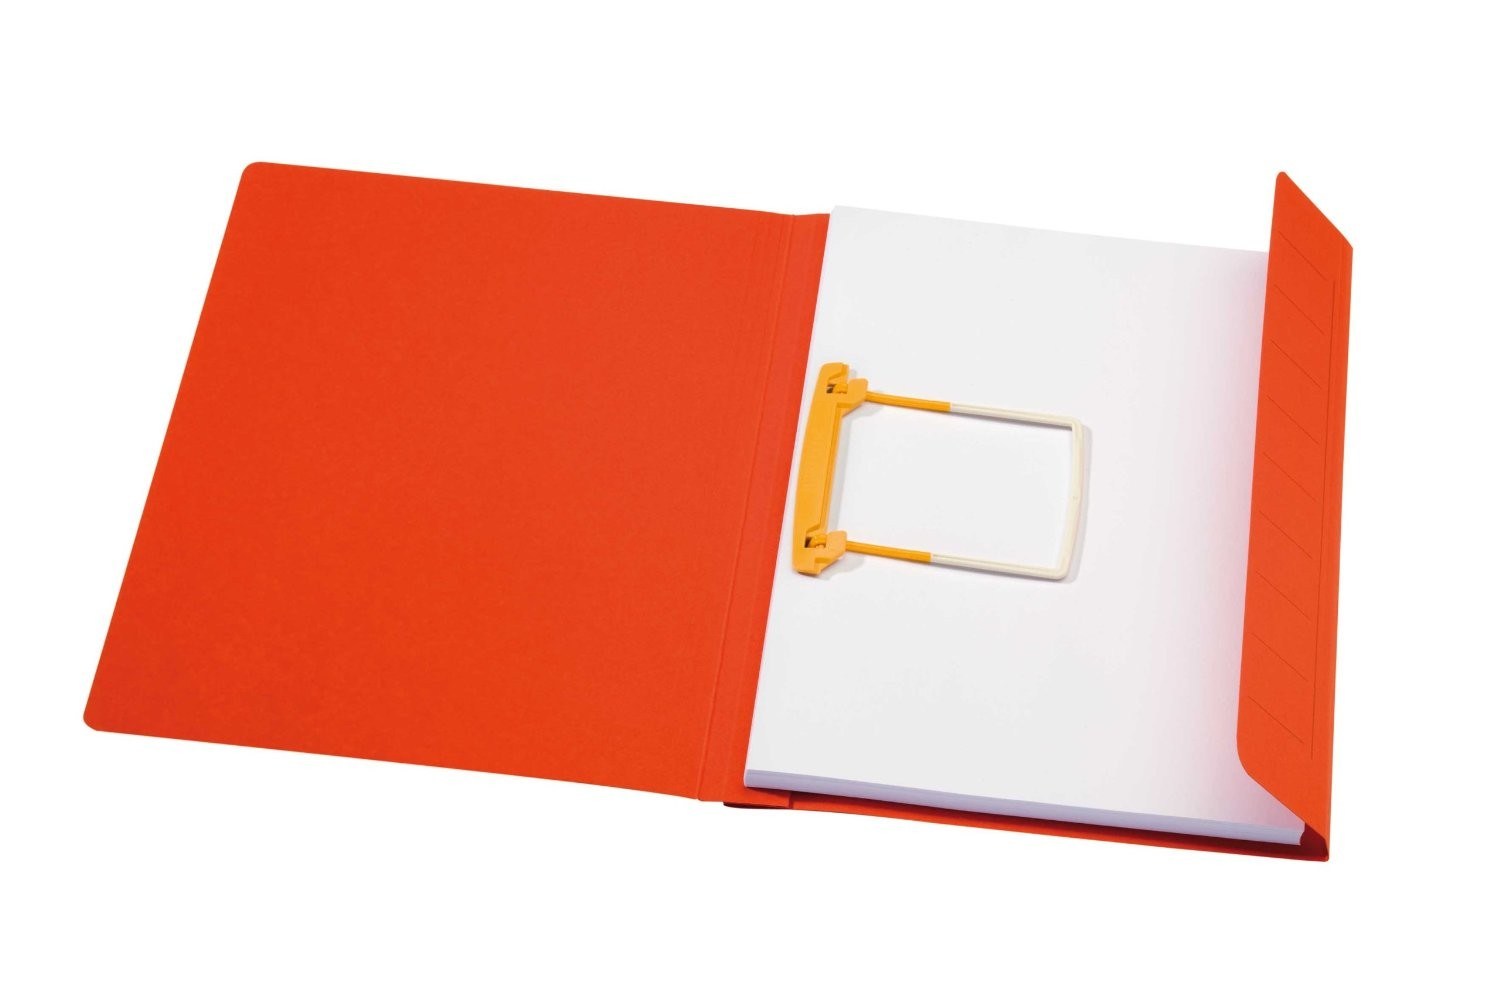 Dosar carton color cu alonja arhivare de mare capacitate, DJOIS Secolor - rosu